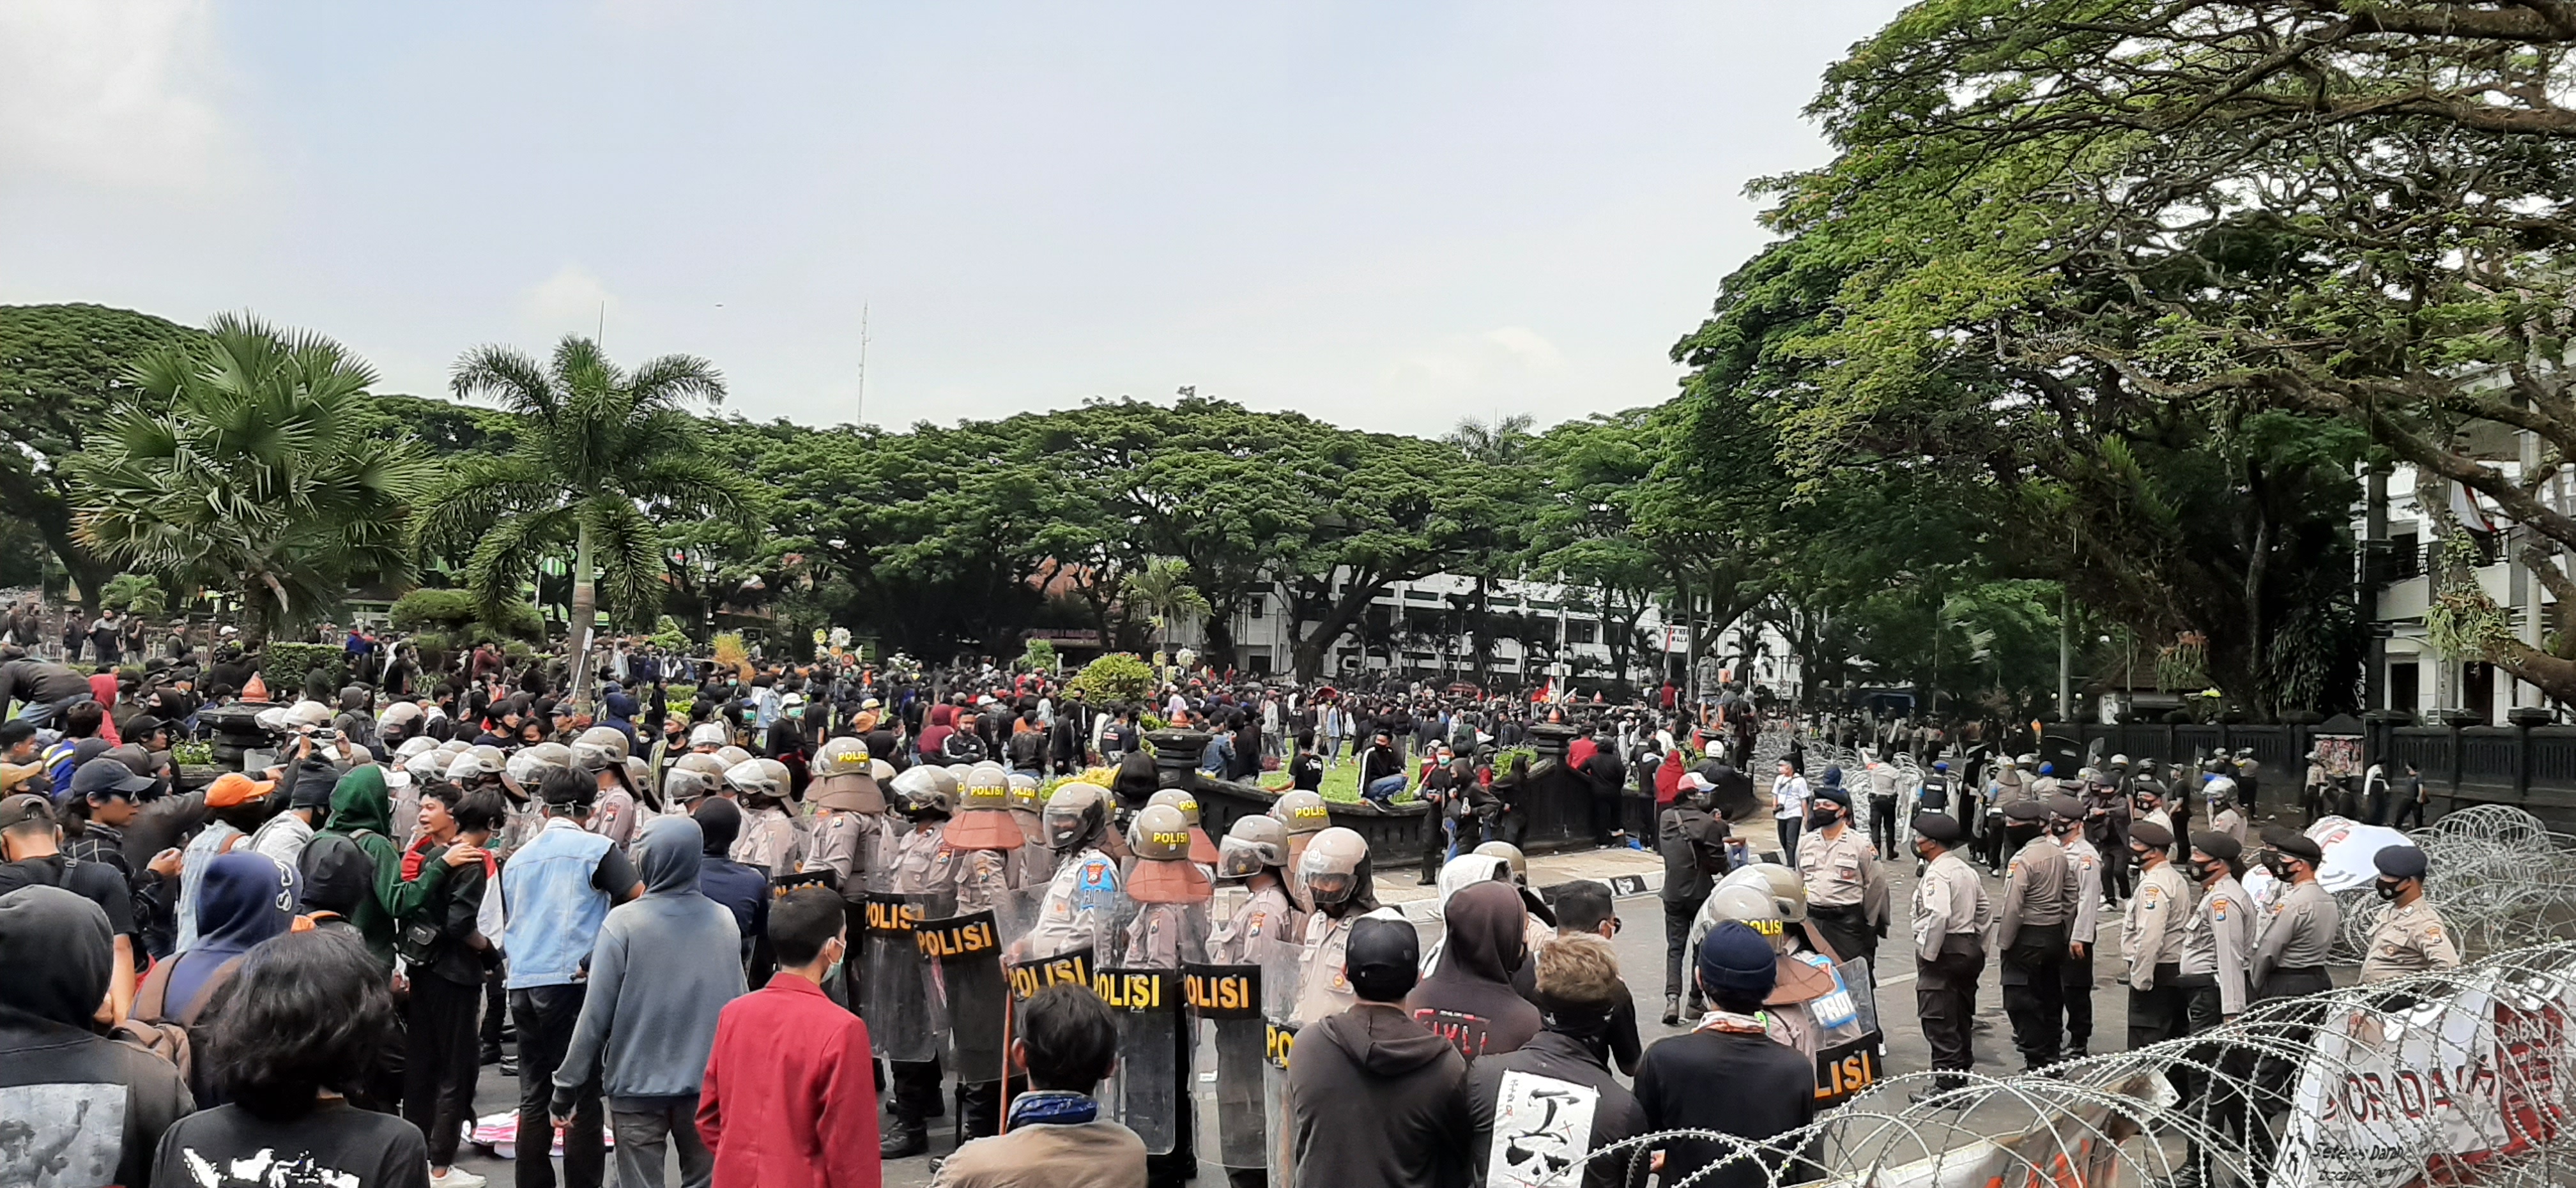 Tanpa Orasi, Ketua DPRD Kota Malang Sebut Demo Sudah Direncanakan